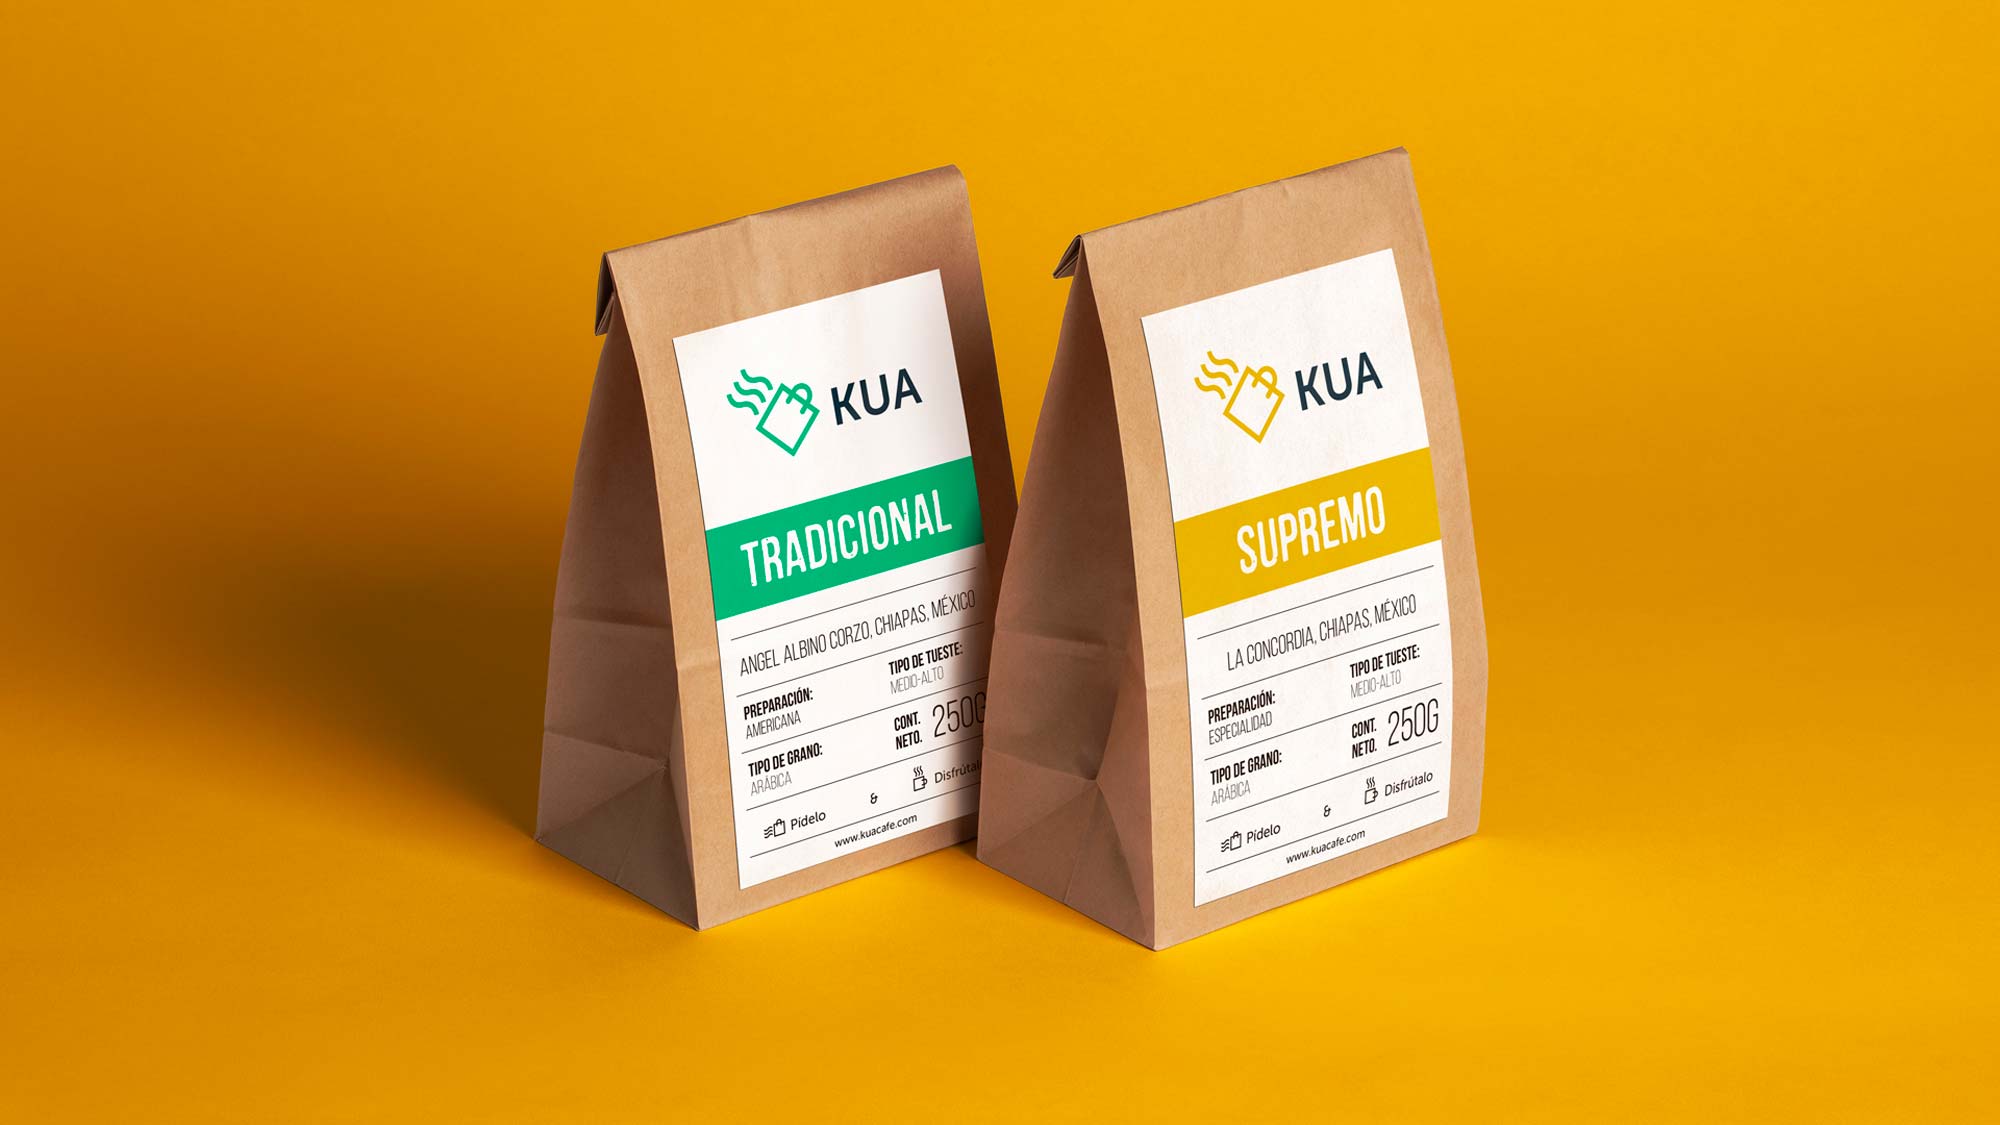 herrera-branding-studio-kua-coffee-brand-identity-bag-packaging